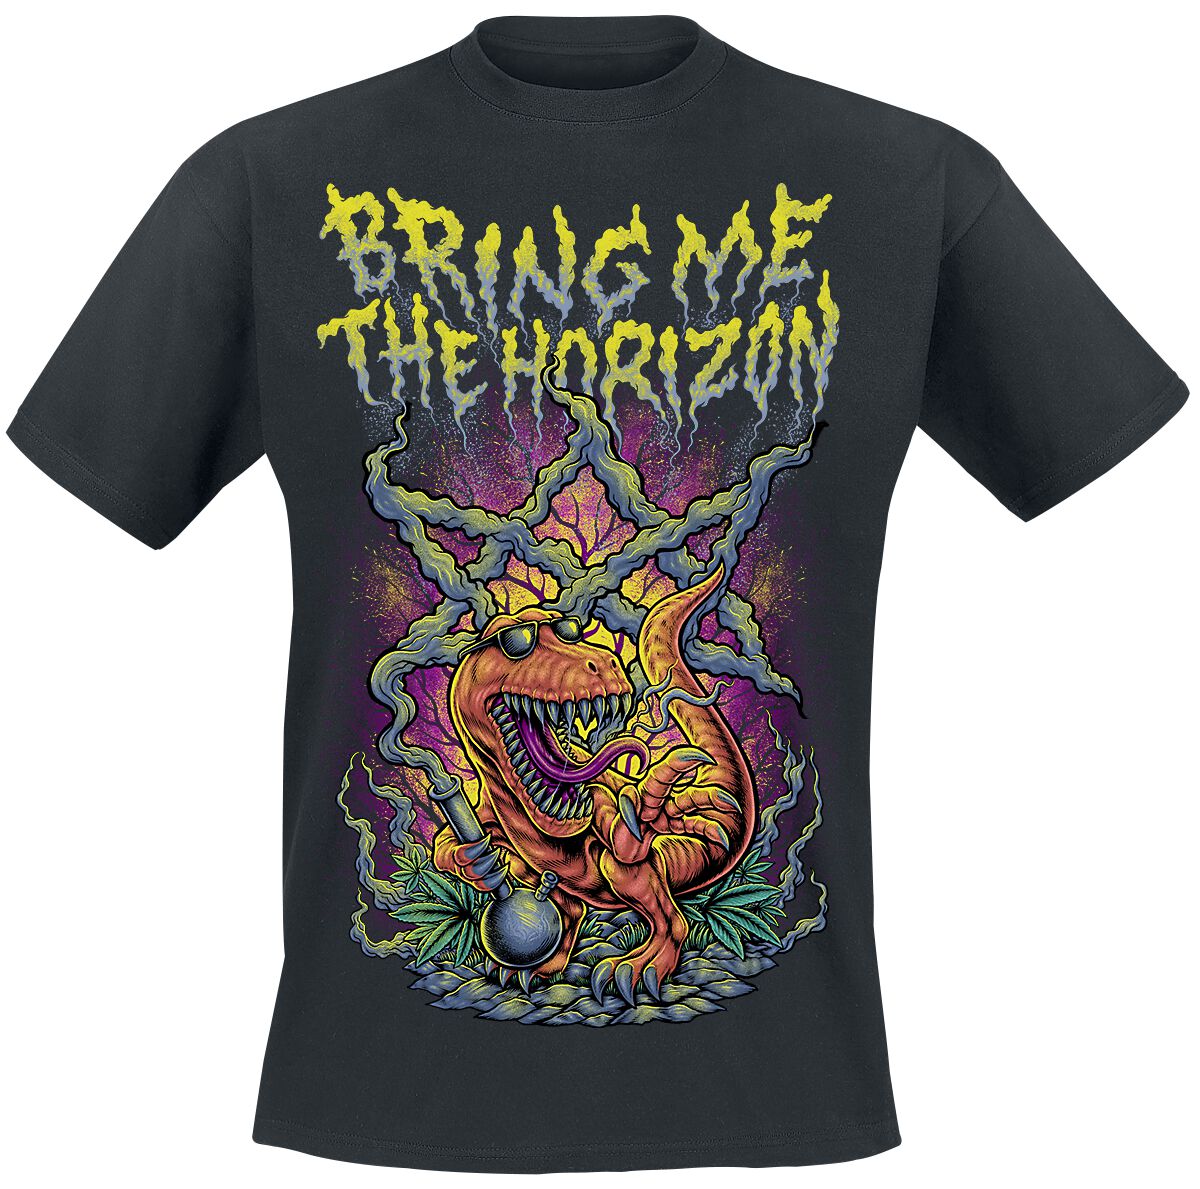 Bring Me The Horizon Smoking Dinosaur T-Shirt schwarz in L